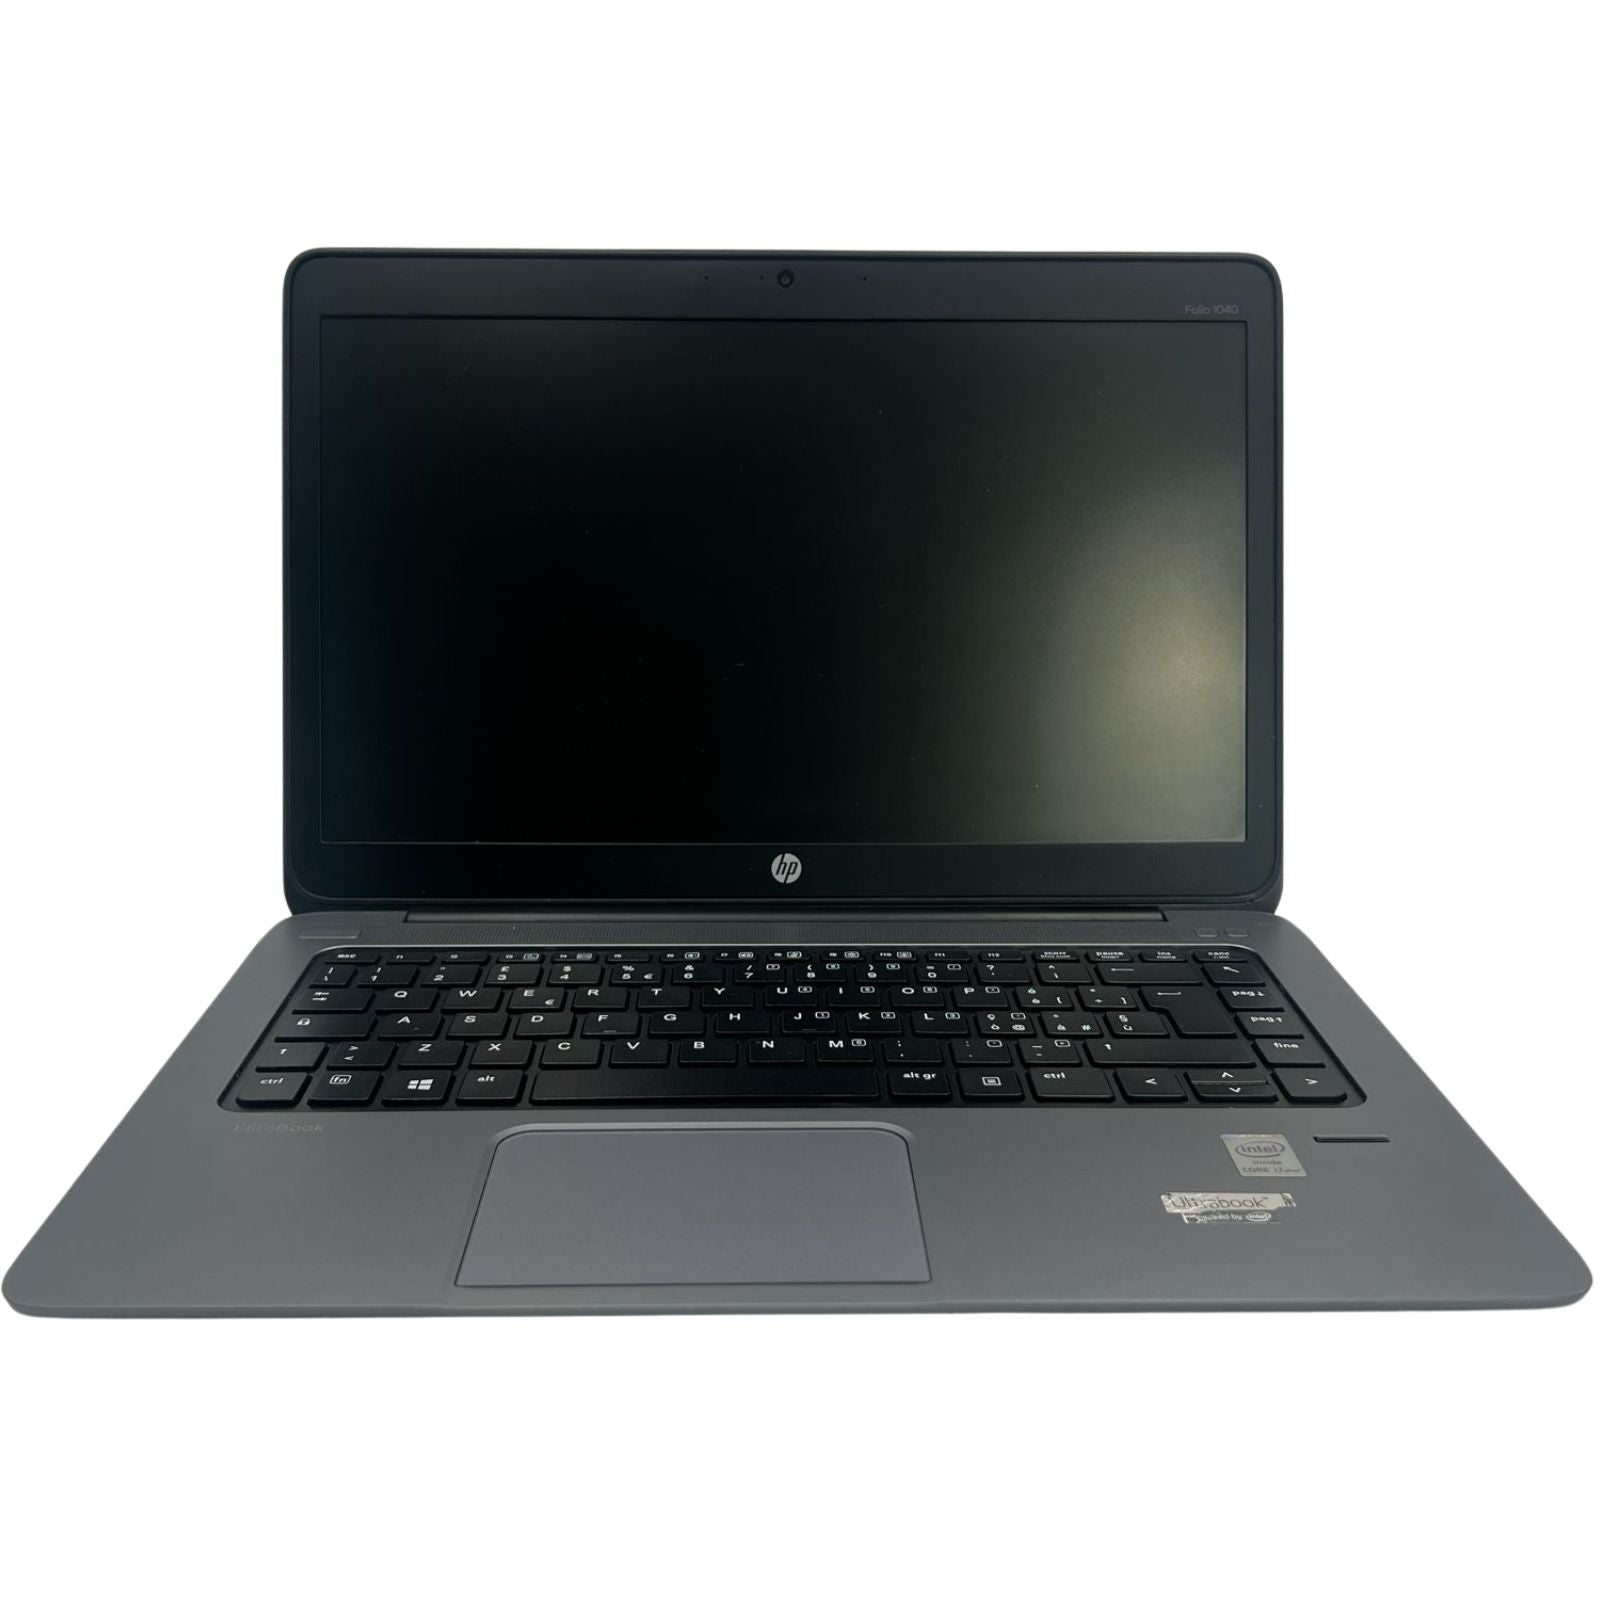 Notebook ricondizionato - Grado A - HP EliteBook Folio 1040 G1 Notebook PC Portatile 14" Intel Core i7-4600U Ram 8GB SSD 240GB Webcam (Ricondizionato Grado A) - Disponibile in 2-4 giorni lavorativi